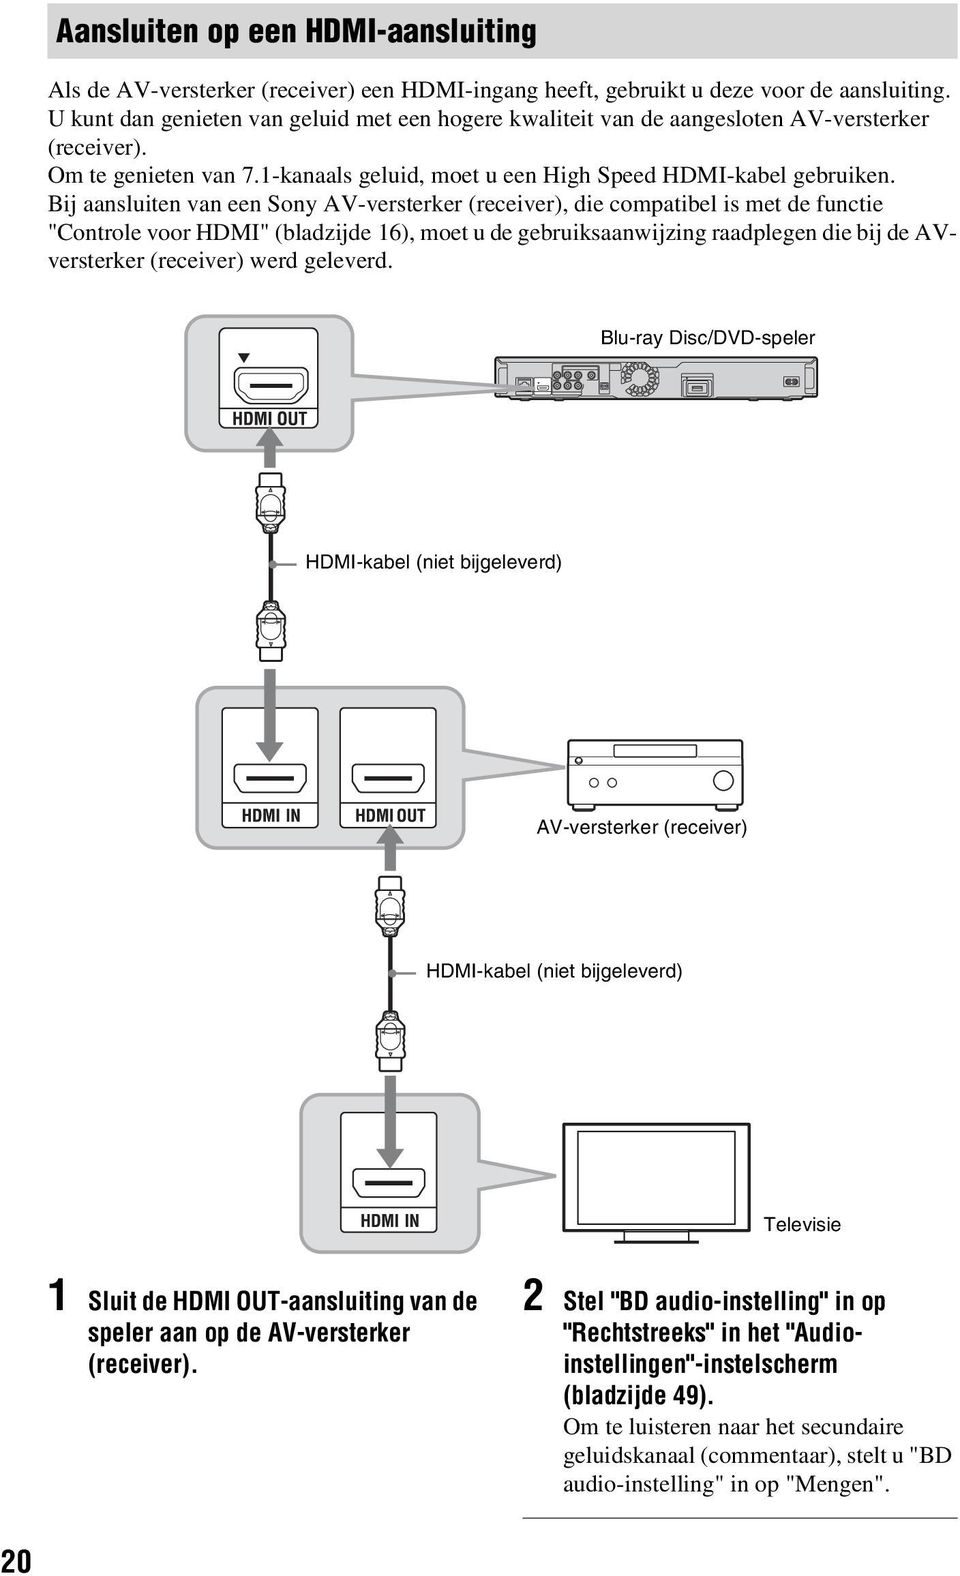 Bij aansluiten van een Sony AV-versterker (receiver), die compatiel is met de functie "Controle voor HDMI" (ladzijde 16), moet u de geruiksaanwijzing raadplegen die ij de AVversterker (receiver) werd